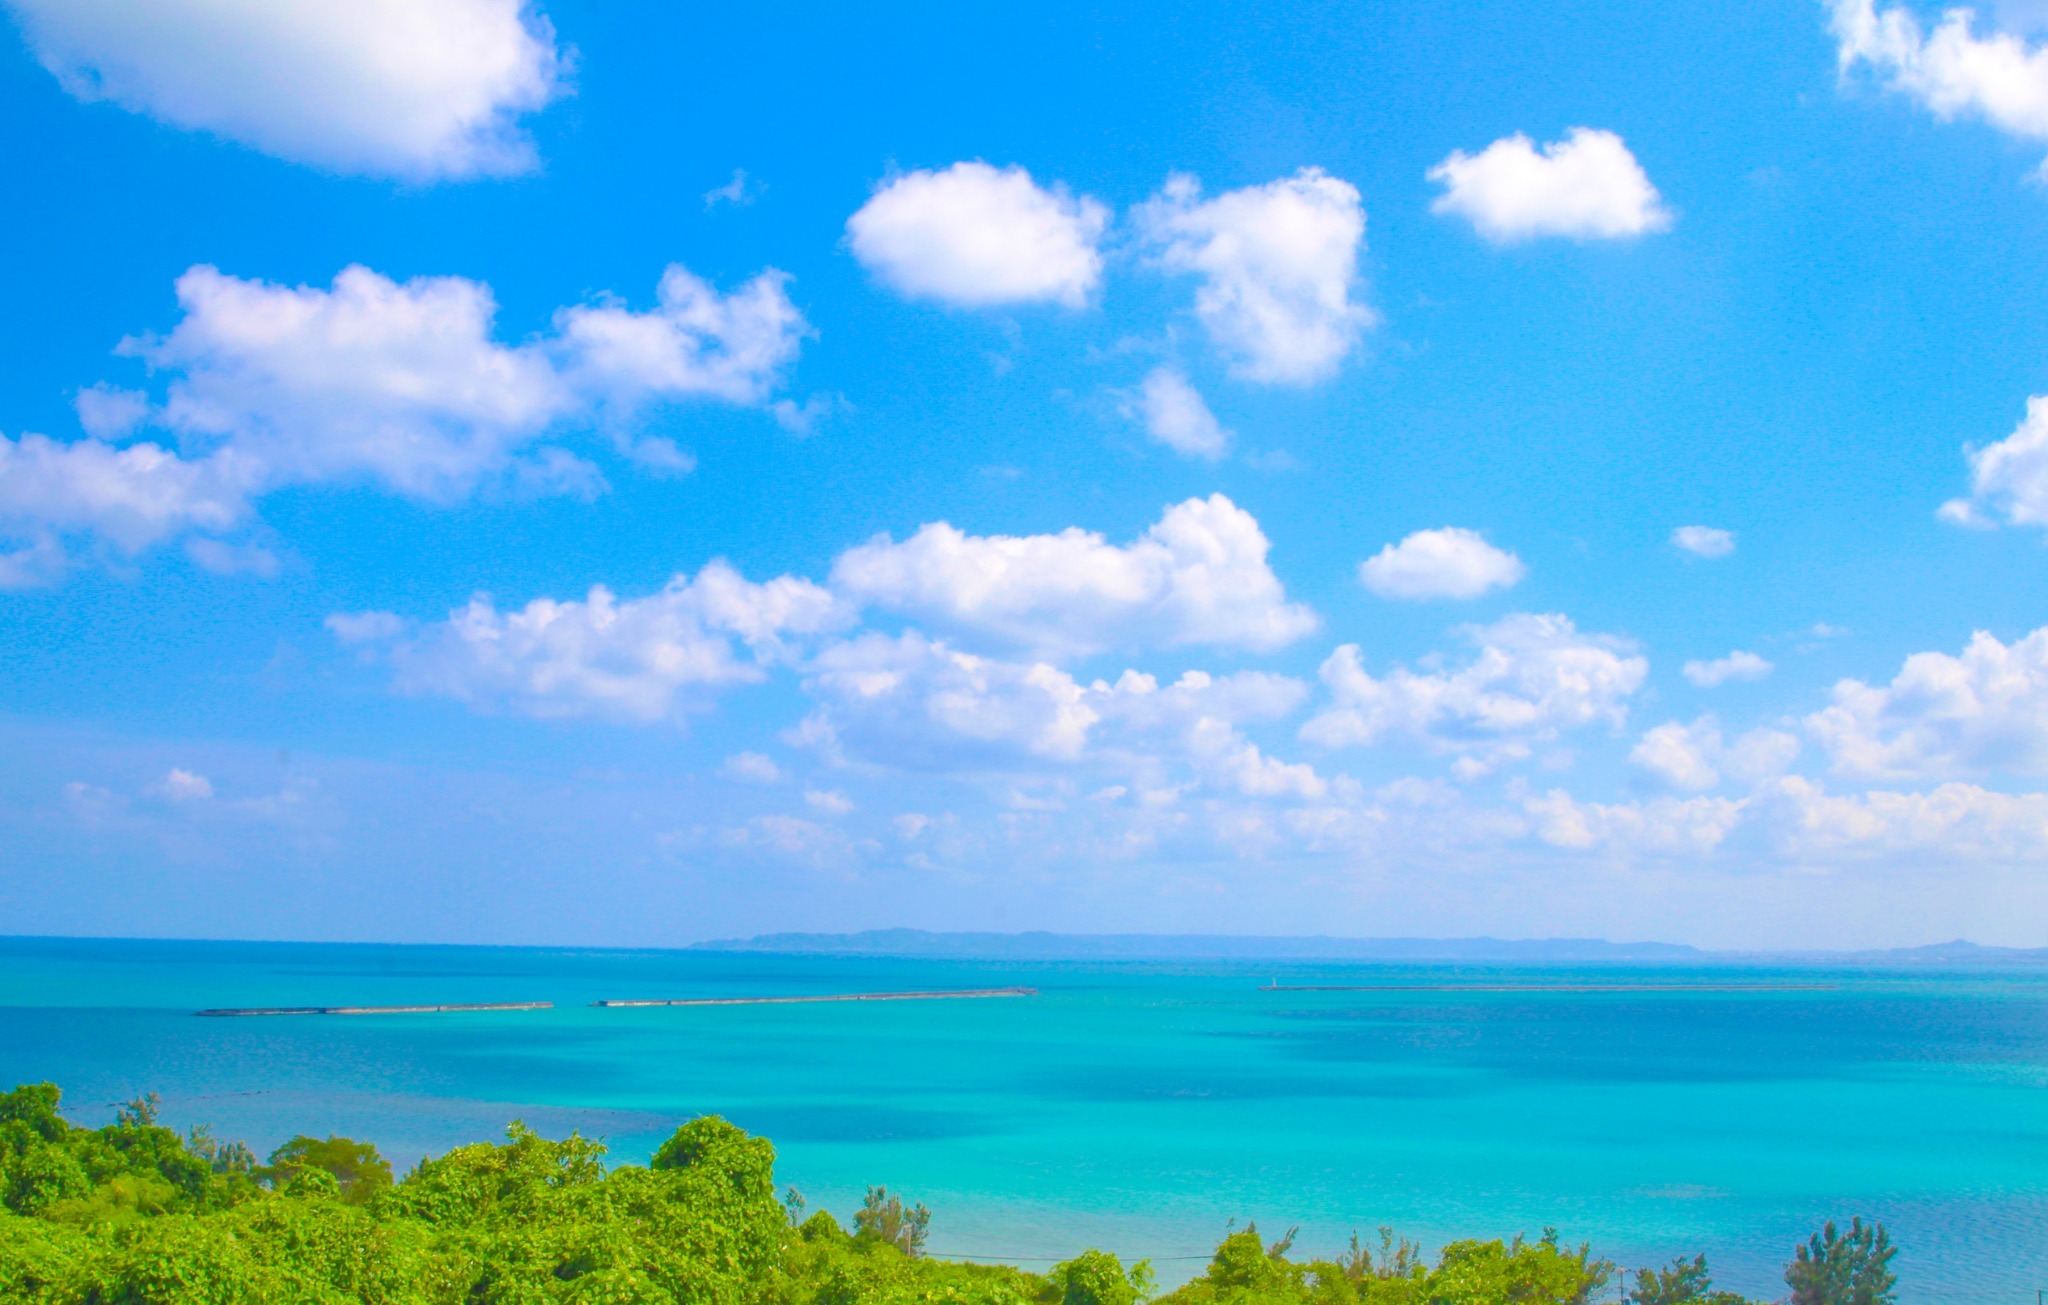 【勝連シートピア】沖縄中部のコスパ最高な人気宿!宿泊者数1000人越。沖縄旅をサポートします